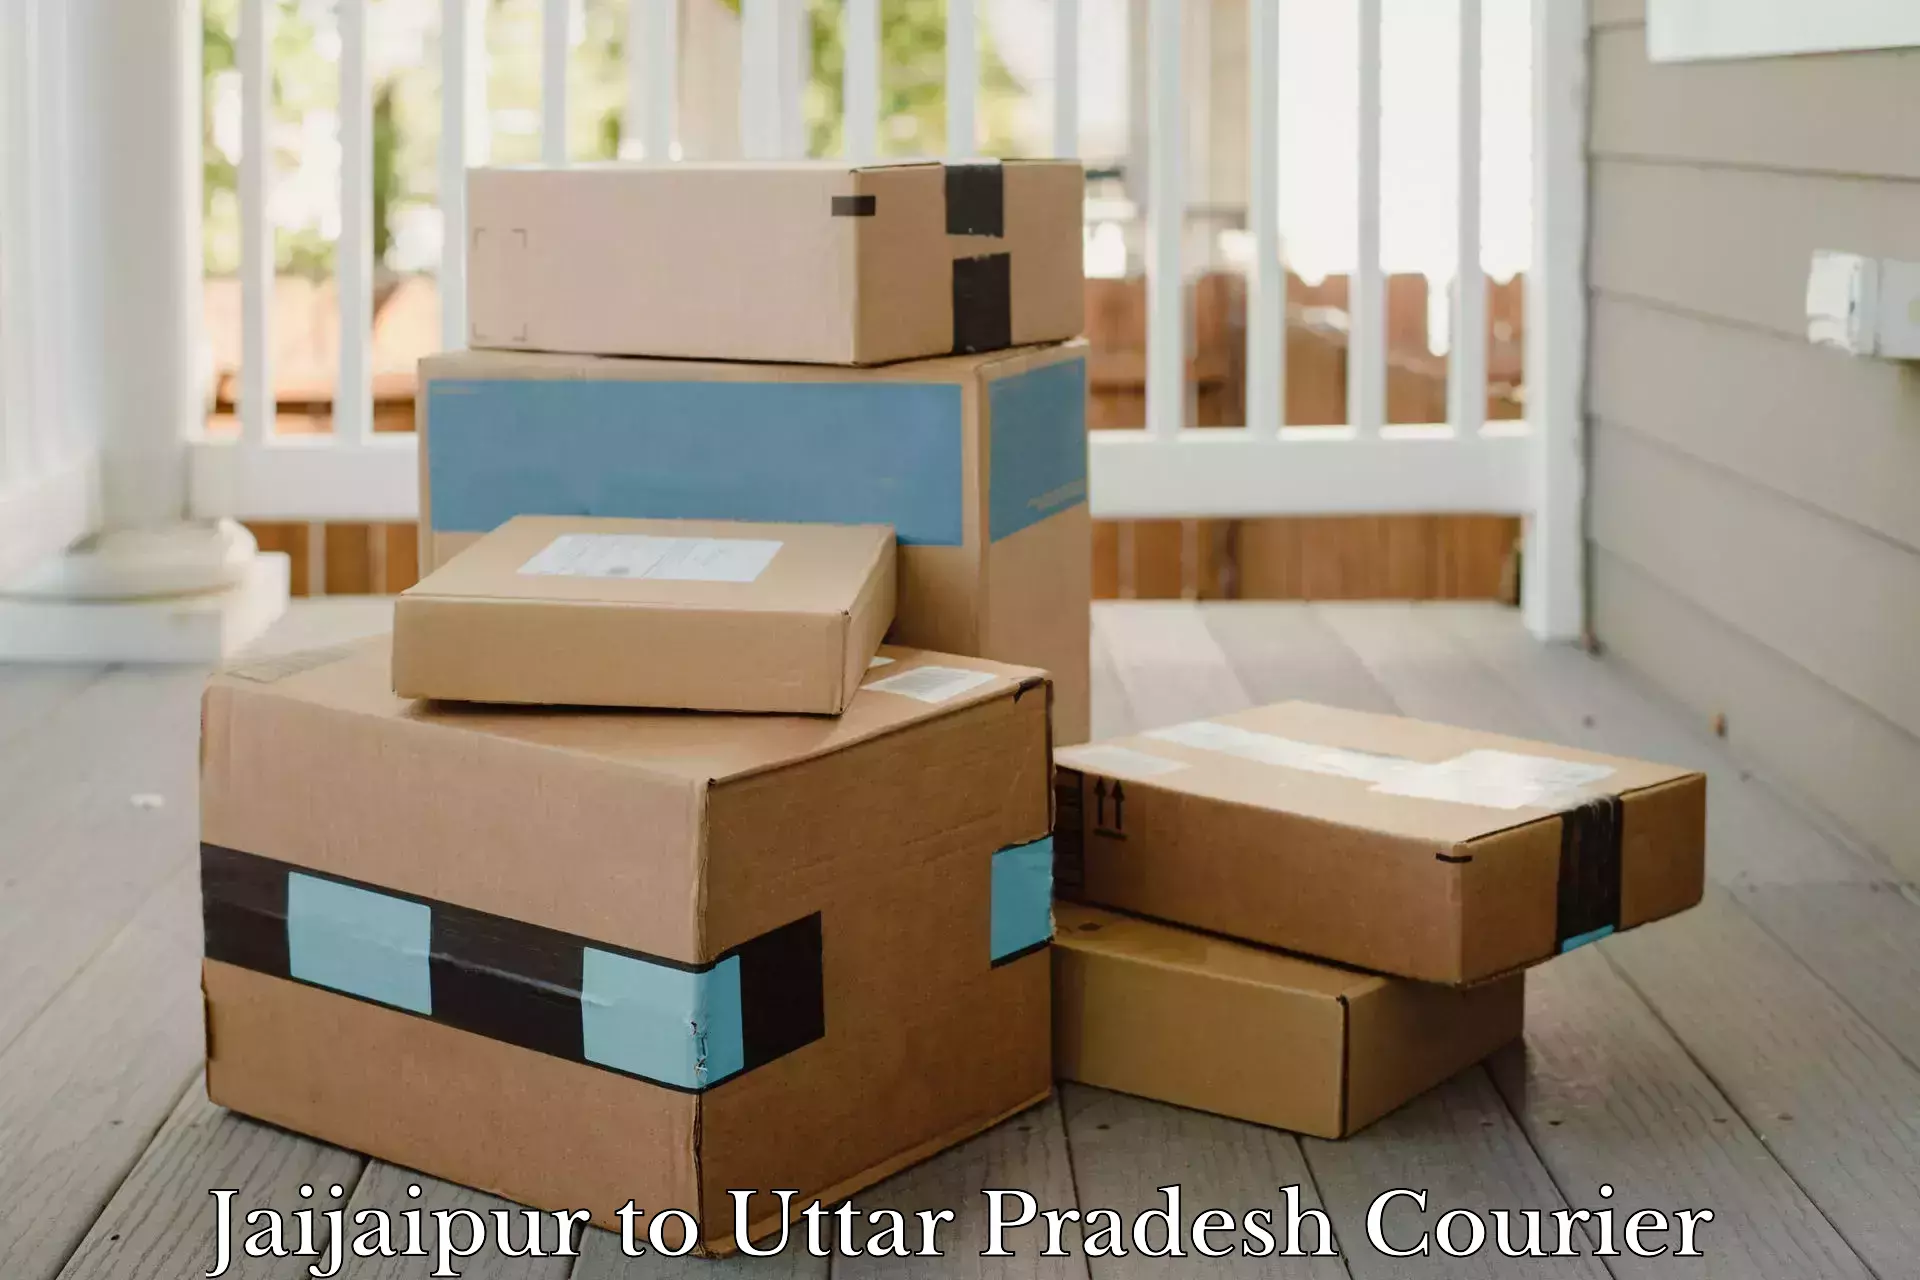 Affordable logistics services Jaijaipur to Sant Ravidas Nagar